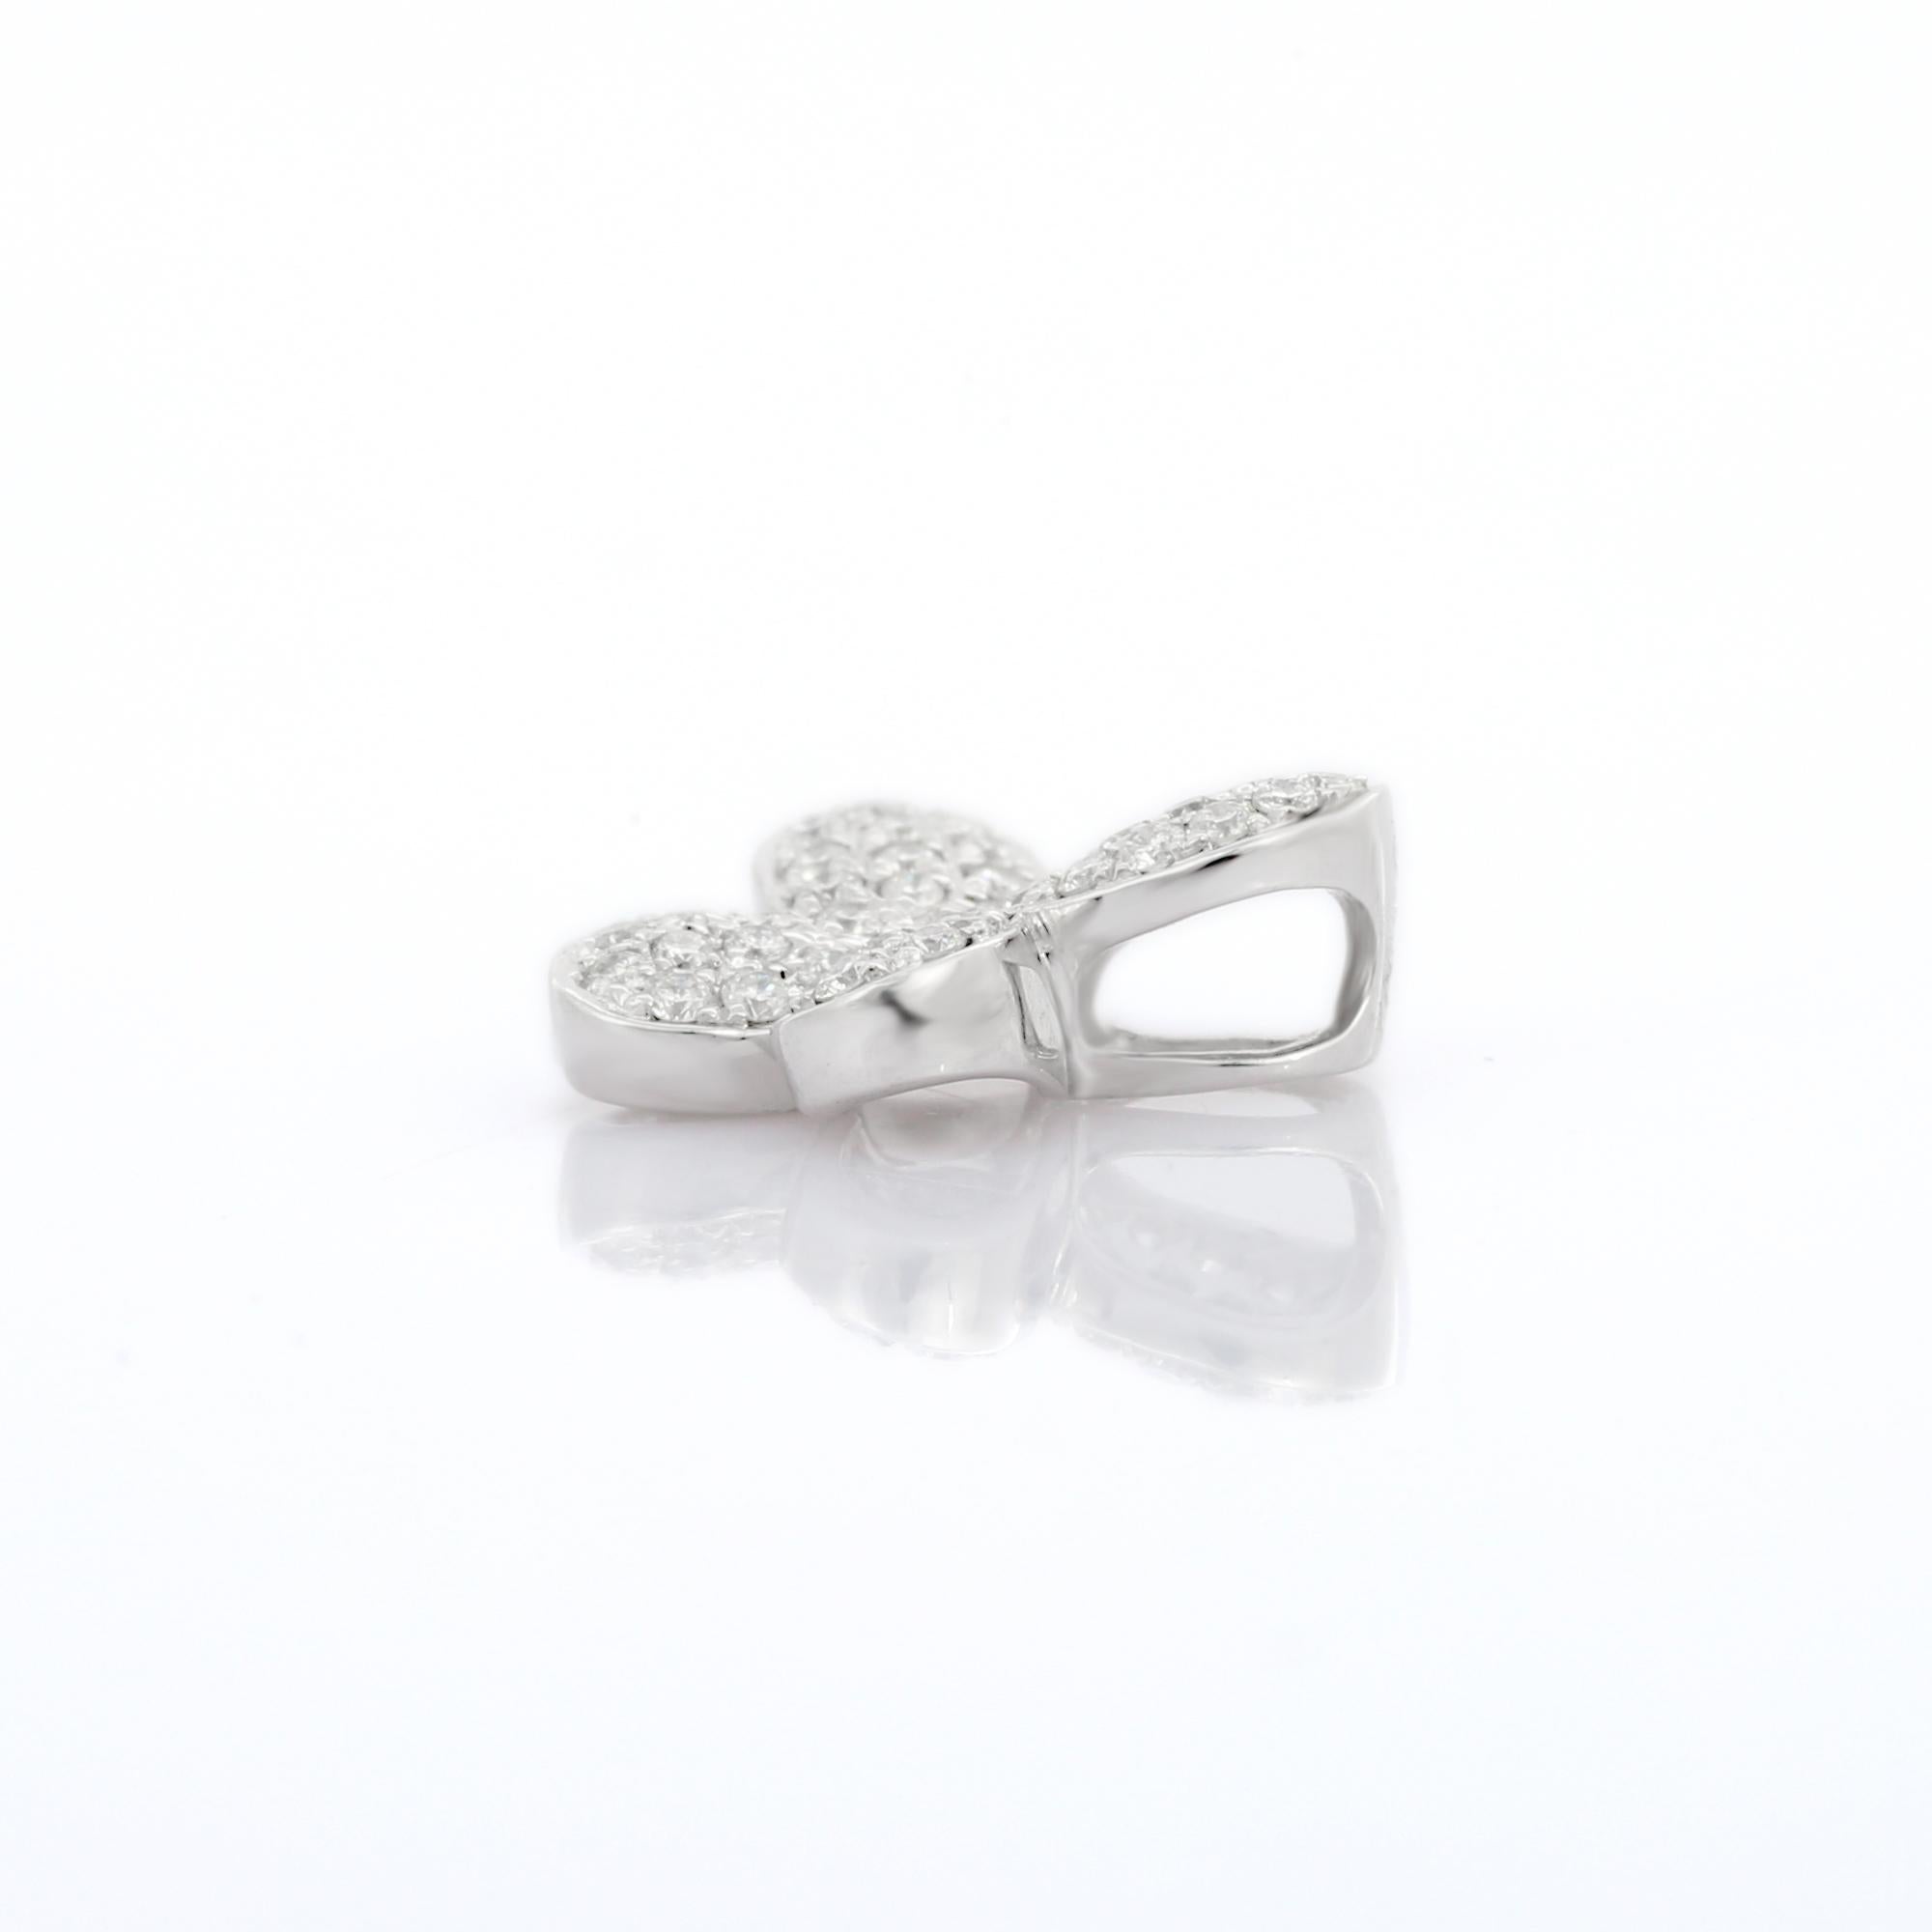 Pendentif papillon en diamant en or 14K. Il comporte des diamants de taille ronde qui complètent votre look avec une touche décente. Ce pendentif papillon est devenu un symbole de renaissance et de résurrection. Les pendentifs sont utilisés pour